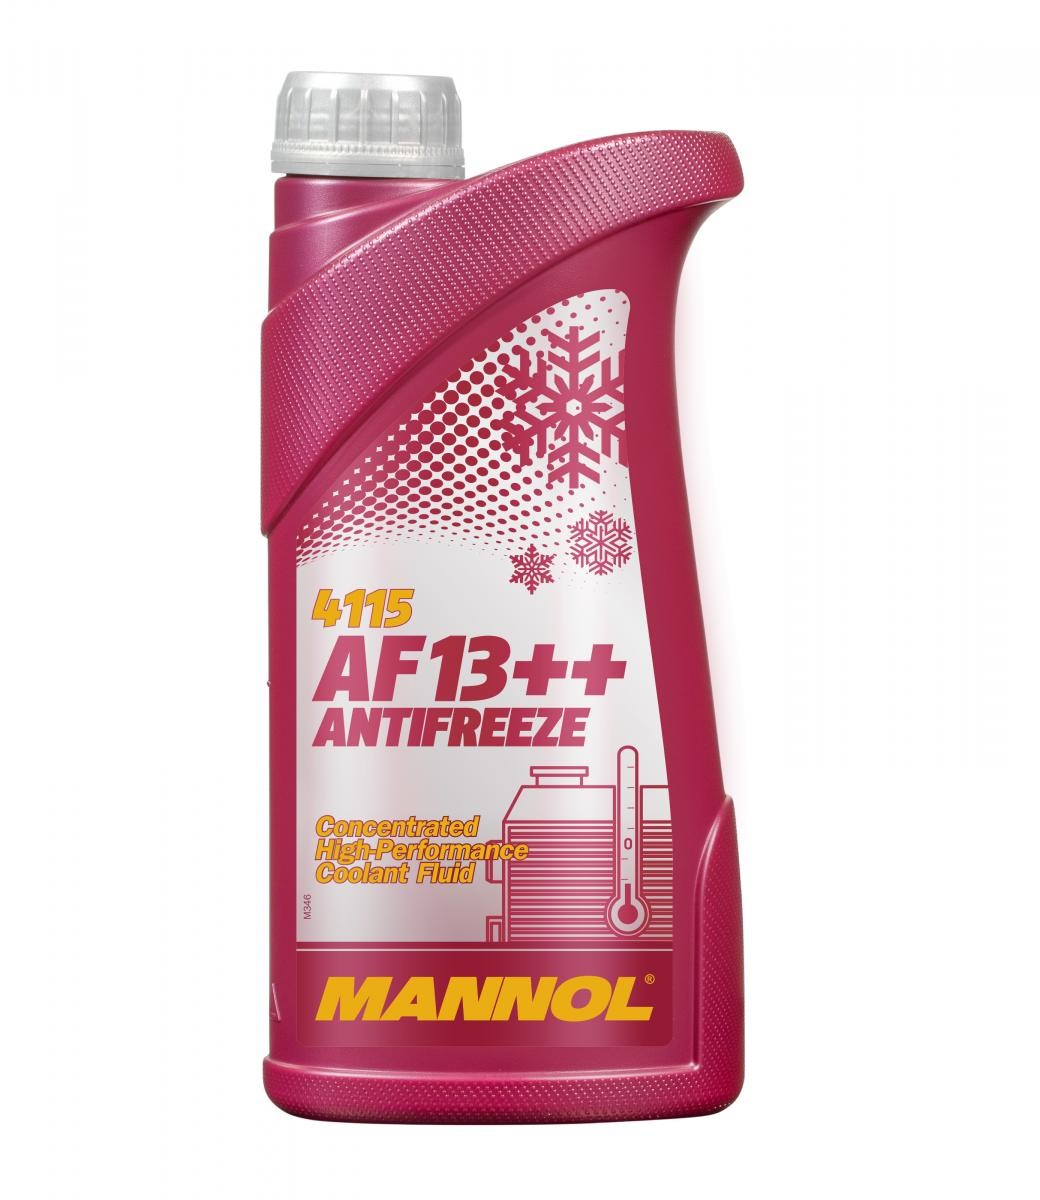 HERCULES SUPRA Kühlmittel G12 Rot, 1l, -38(50/50) MANNOL AF13++, High-performance MN4115-1